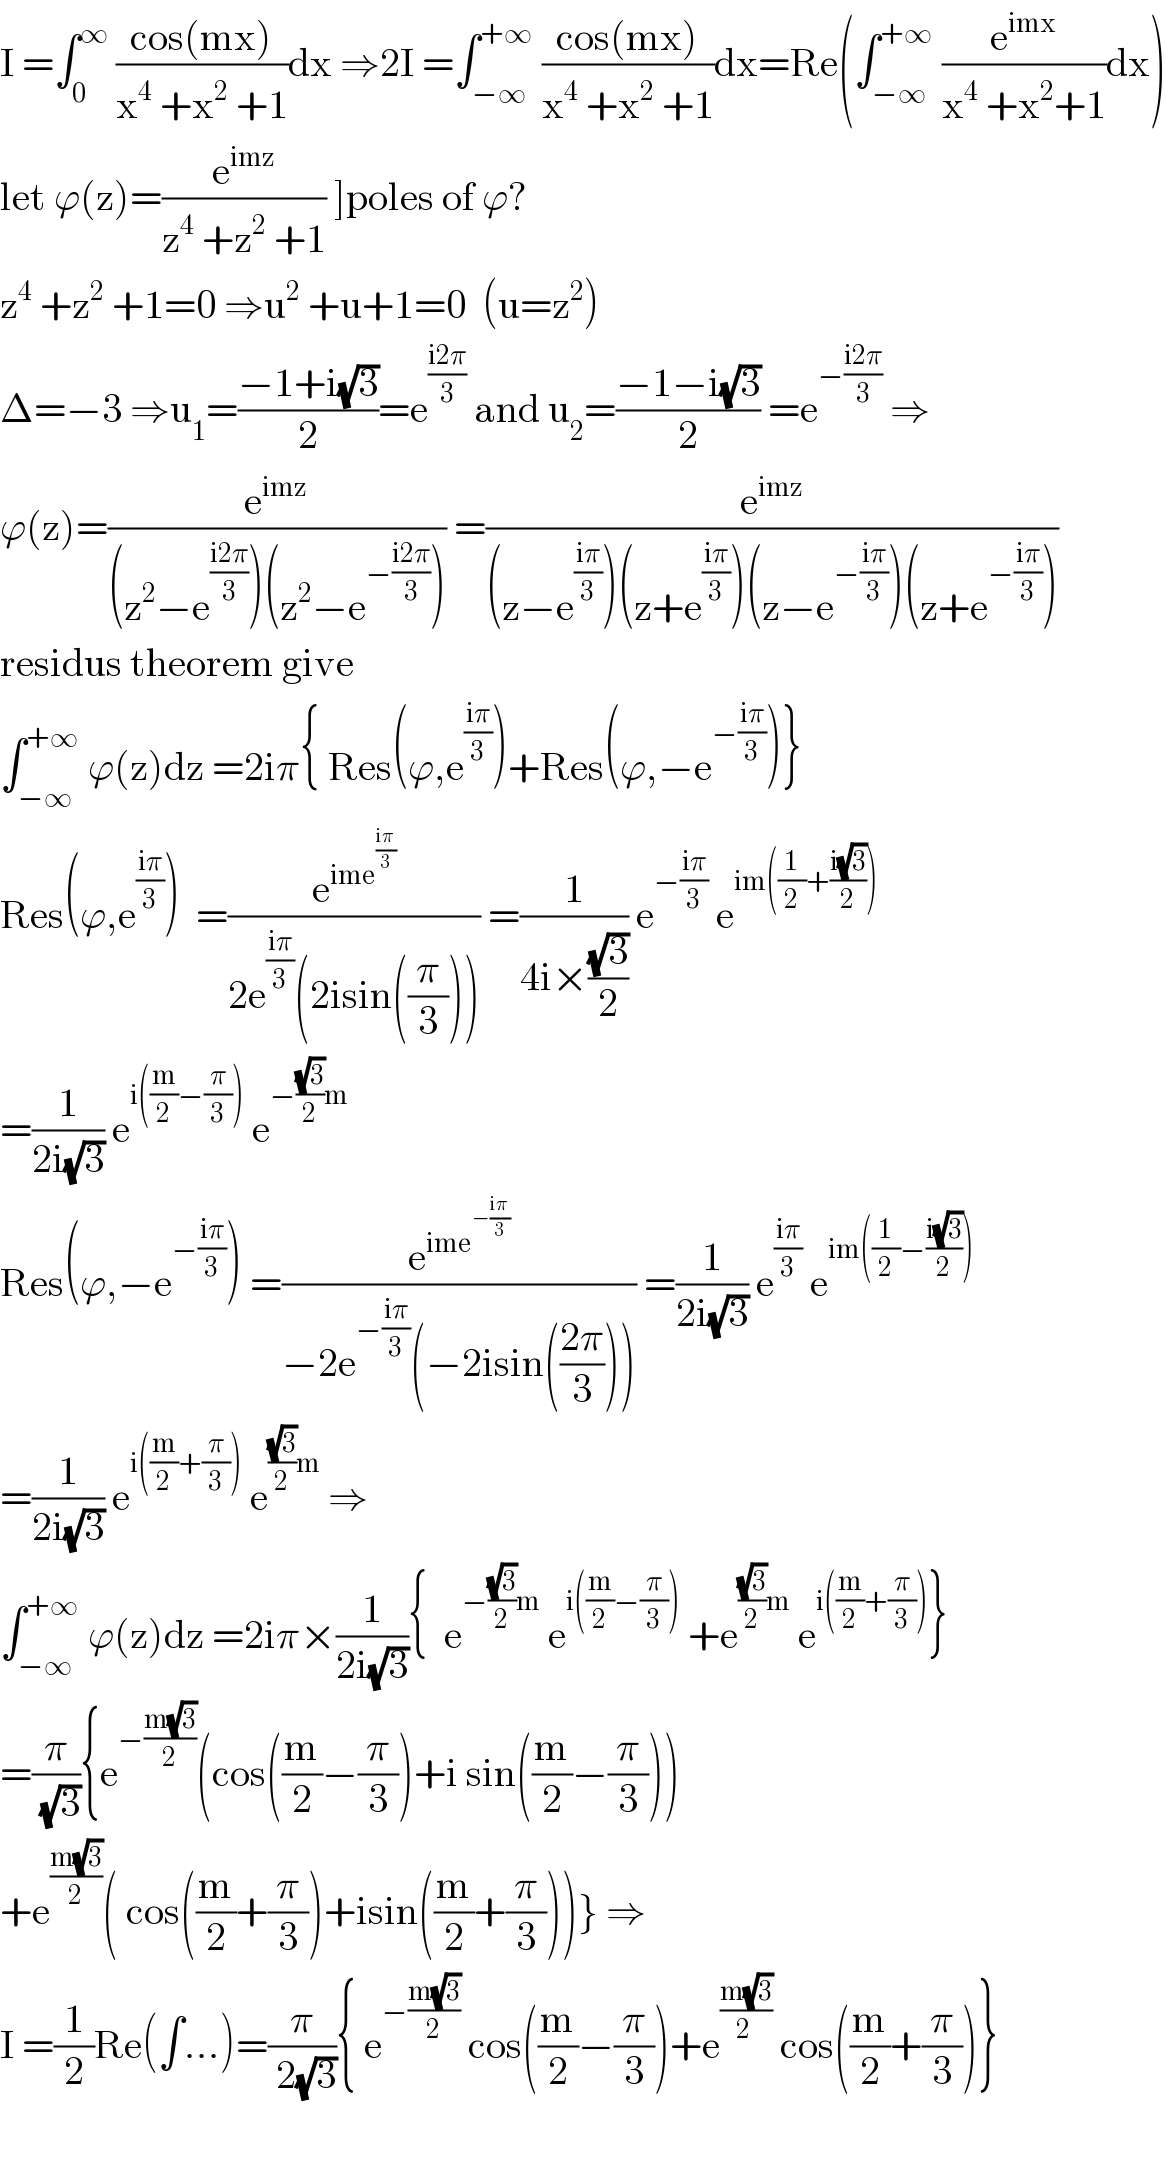 I =∫_0 ^∞  ((cos(mx))/(x^4  +x^2  +1))dx ⇒2I =∫_(−∞) ^(+∞)  ((cos(mx))/(x^4  +x^2  +1))dx=Re(∫_(−∞) ^(+∞)  (e^(imx) /(x^4  +x^2 +1))dx)  let ϕ(z)=(e^(imz) /(z^4  +z^2  +1)) ]poles of ϕ?  z^4  +z^2  +1=0 ⇒u^2  +u+1=0  (u=z^2 )  Δ=−3 ⇒u_1 =((−1+i(√3))/2)=e^((i2π)/3)  and u_2 =((−1−i(√3))/2) =e^(−((i2π)/3))  ⇒  ϕ(z)=(e^(imz) /((z^2 −e^((i2π)/3) )(z^2 −e^(−((i2π)/3)) ))) =(e^(imz) /((z−e^((iπ)/3) )(z+e^((iπ)/3) )(z−e^(−((iπ)/3)) )(z+e^(−((iπ)/3)) )))  residus theorem give   ∫_(−∞) ^(+∞)  ϕ(z)dz =2iπ{ Res(ϕ,e^((iπ)/3) )+Res(ϕ,−e^(−((iπ)/3)) )}  Res(ϕ,e^((iπ)/3) )  =(e^(ime^((iπ)/3) ) /(2e^((iπ)/3) (2isin((π/3))))) =(1/(4i×((√3)/2))) e^(−((iπ)/3))  e^(im((1/2)+((i(√3))/2)))   =(1/(2i(√3))) e^(i((m/2)−(π/3)))  e^(−((√3)/2)m)   Res(ϕ,−e^(−((iπ)/3)) ) =(e^(ime^(−((iπ)/3)) ) /(−2e^(−((iπ)/3)) (−2isin(((2π)/3))))) =(1/(2i(√3))) e^((iπ)/3)  e^(im((1/2)−((i(√3))/2)))   =(1/(2i(√3))) e^(i((m/2)+(π/3)))  e^(((√3)/2)m)  ⇒  ∫_(−∞) ^(+∞)  ϕ(z)dz =2iπ×(1/(2i(√3))){  e^(−((√3)/2)m)  e^(i((m/2)−(π/3)))  +e^(((√3)/2)m)  e^(i((m/2)+(π/3))) }  =(π/( (√3))){e^(−((m(√3))/2)) (cos((m/2)−(π/3))+i sin((m/2)−(π/3)))  +e^((m(√3))/2) ( cos((m/2)+(π/3))+isin((m/2)+(π/3)))} ⇒  I =(1/2)Re(∫...)=(π/( 2(√3))){ e^(−((m(√3))/2))  cos((m/2)−(π/3))+e^((m(√3))/(2 ))  cos((m/2)+(π/3))}    